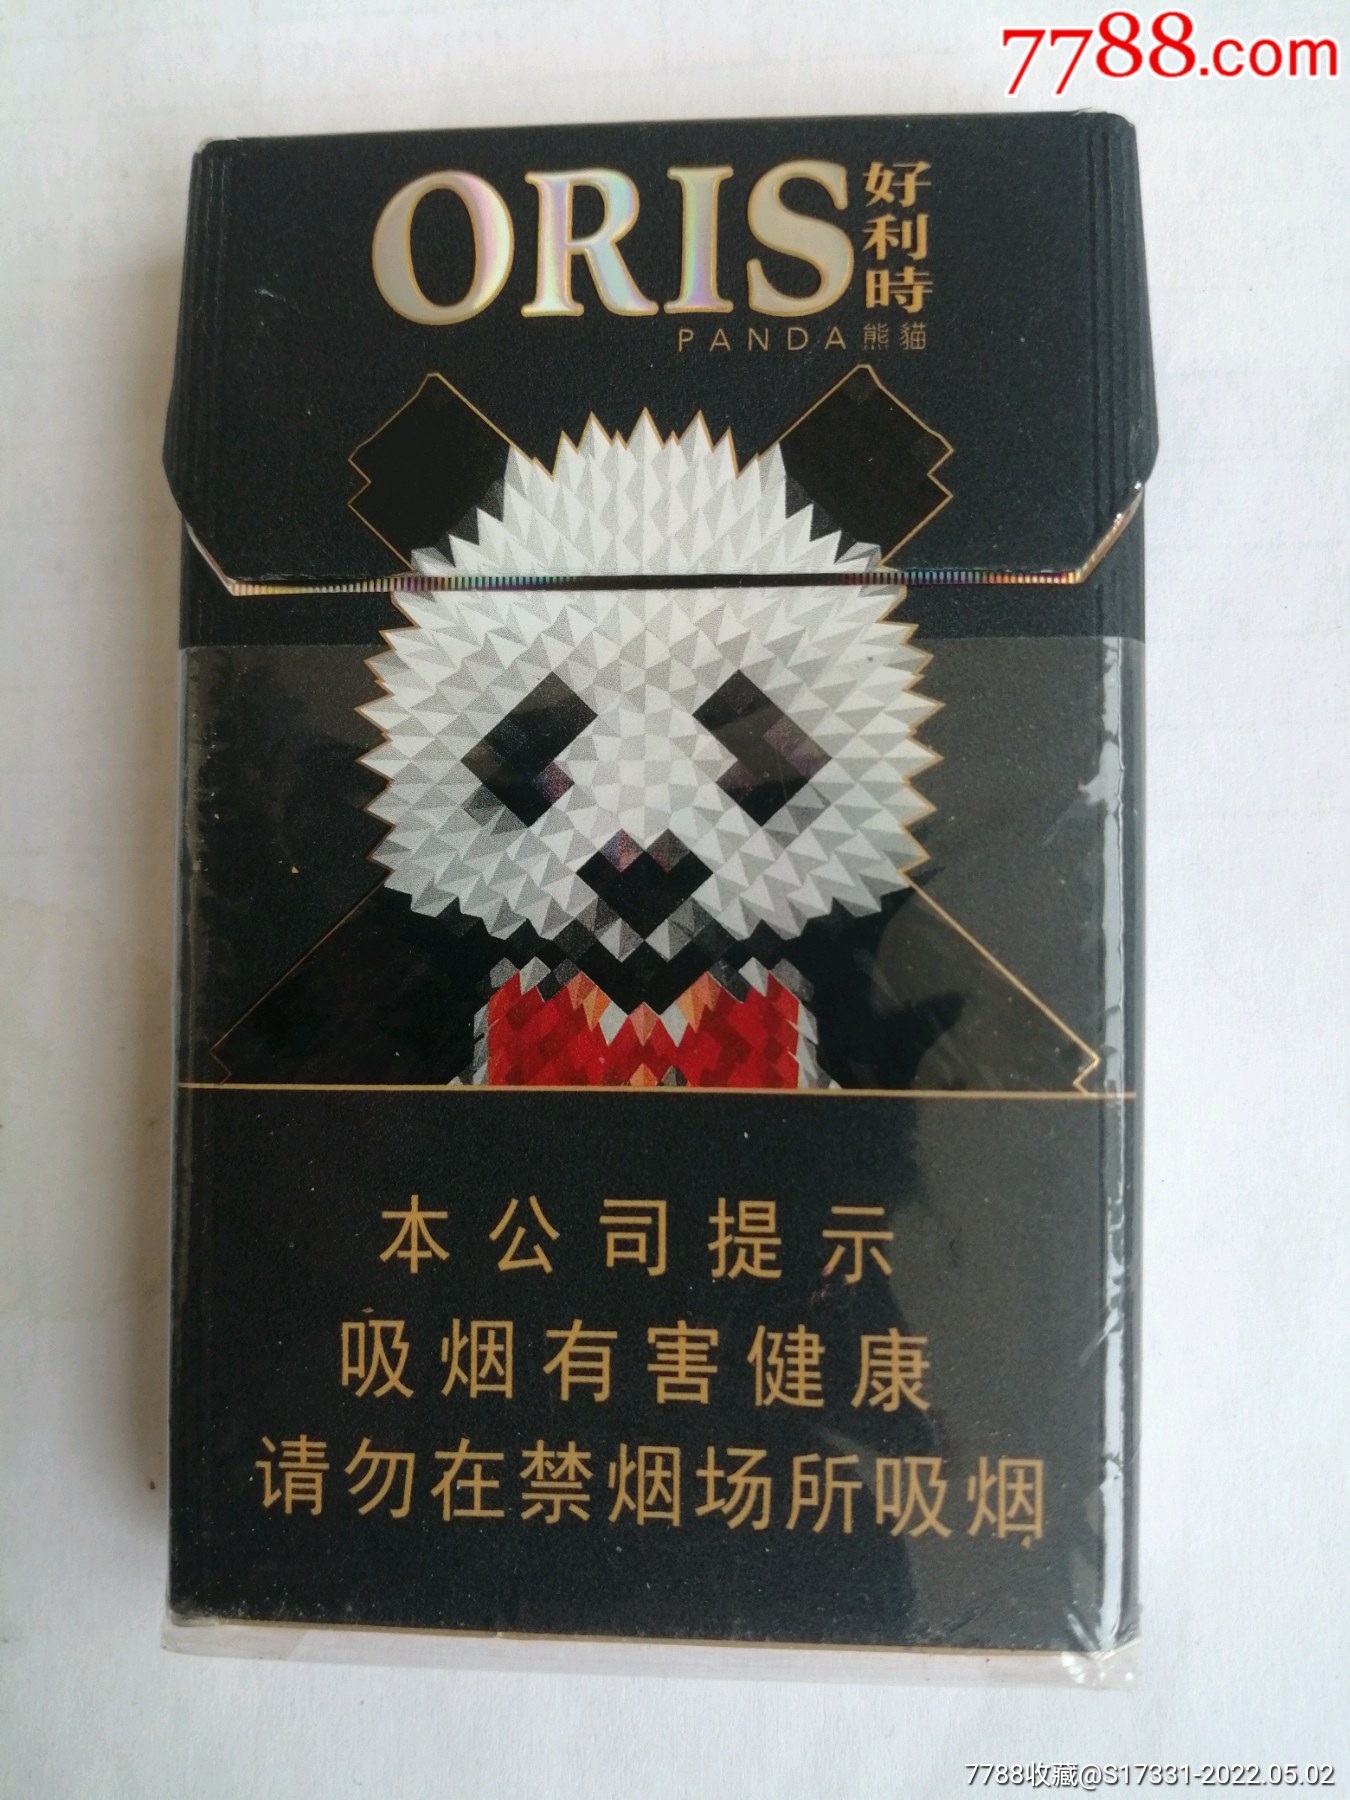 oris熊猫烟盒吸烟有害健康